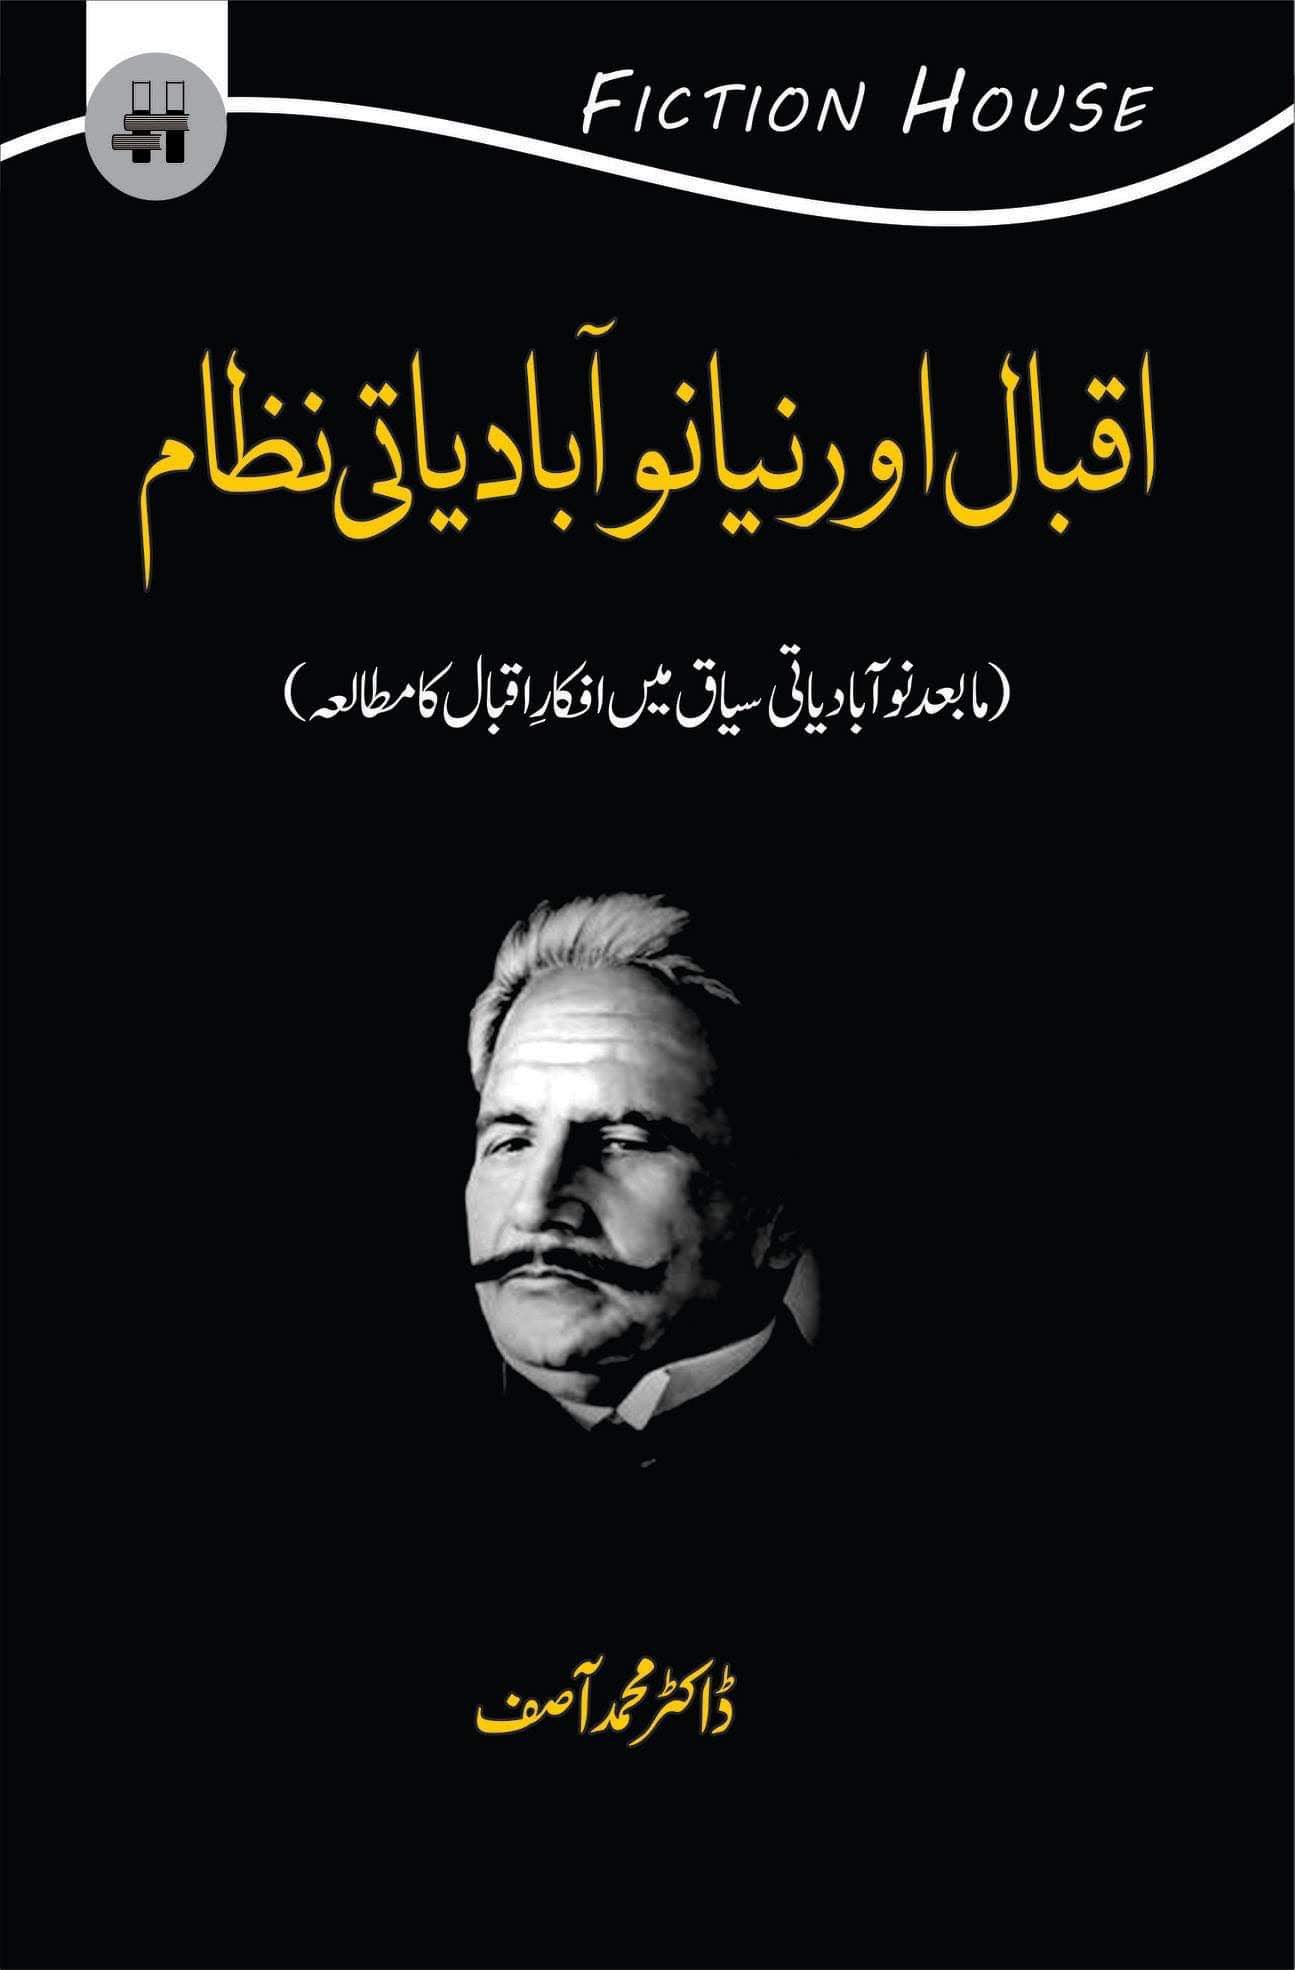 اقبال اور نیا نوآبادیاتی نظام | Iqbal Niya noabadiyati Nazam Fiction House